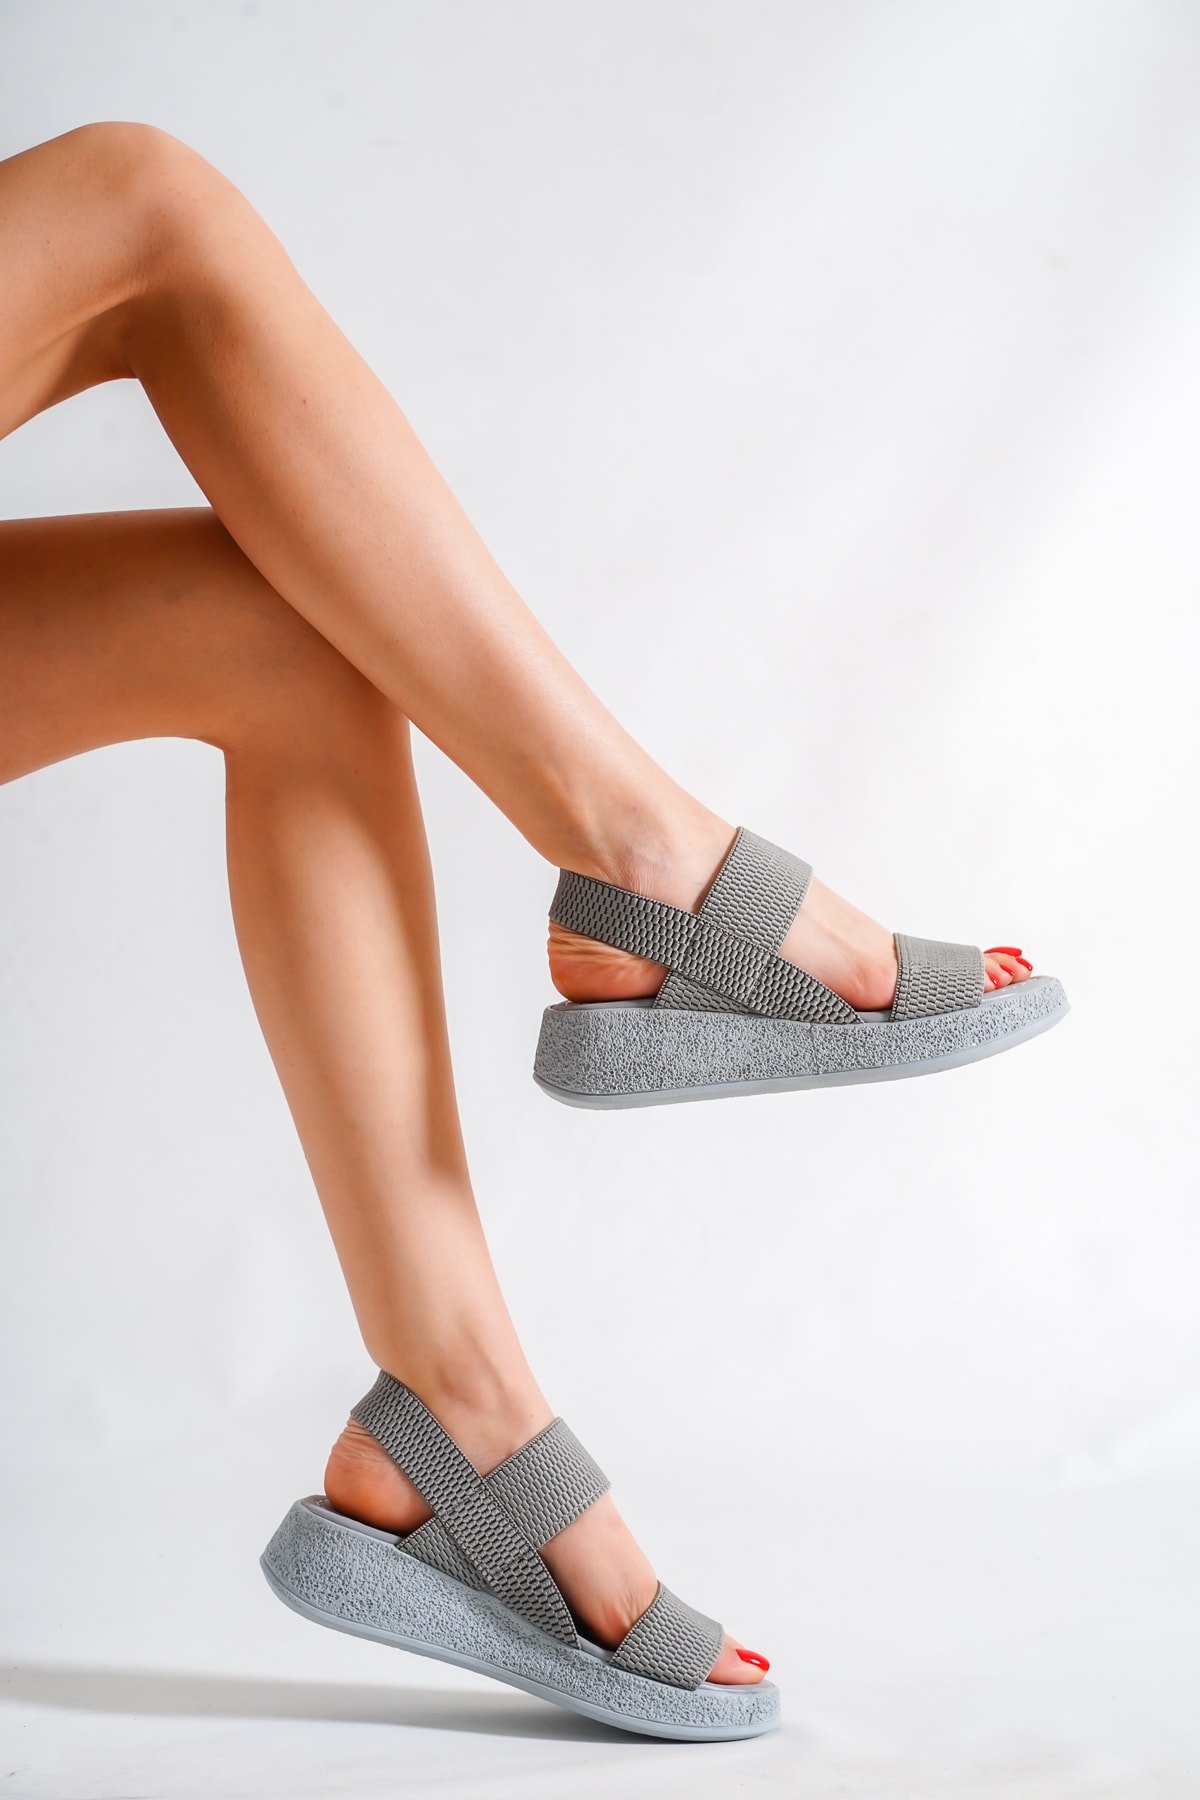 MORIA Kadın Lasera Gri Renk 4 Cm Dolgu Lastikli Sandalet